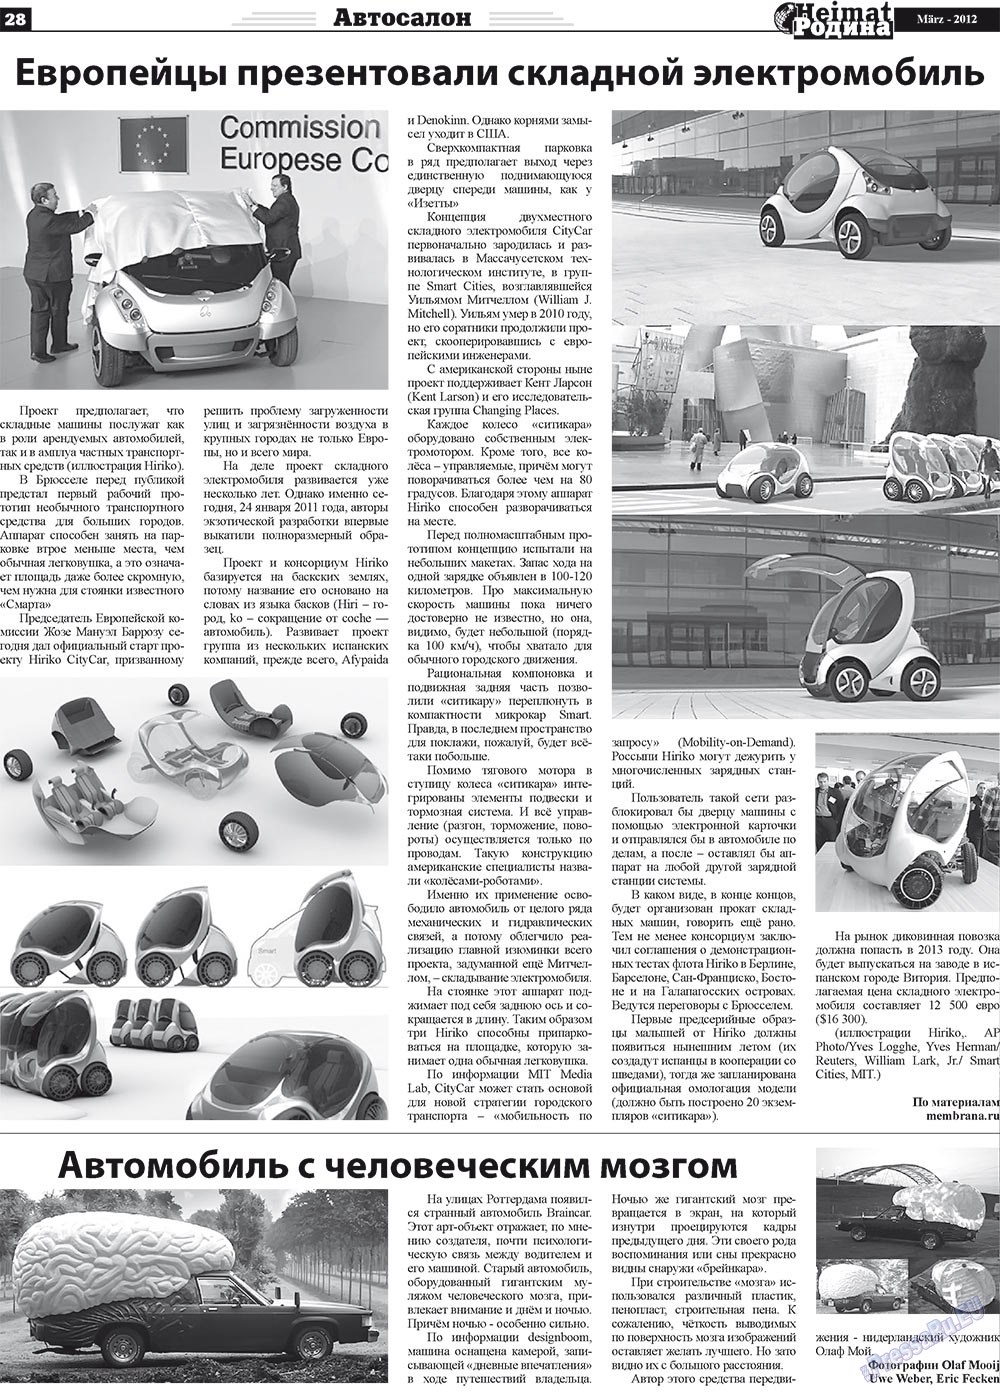 Heimat-Родина (газета). 2012 год, номер 3, стр. 28